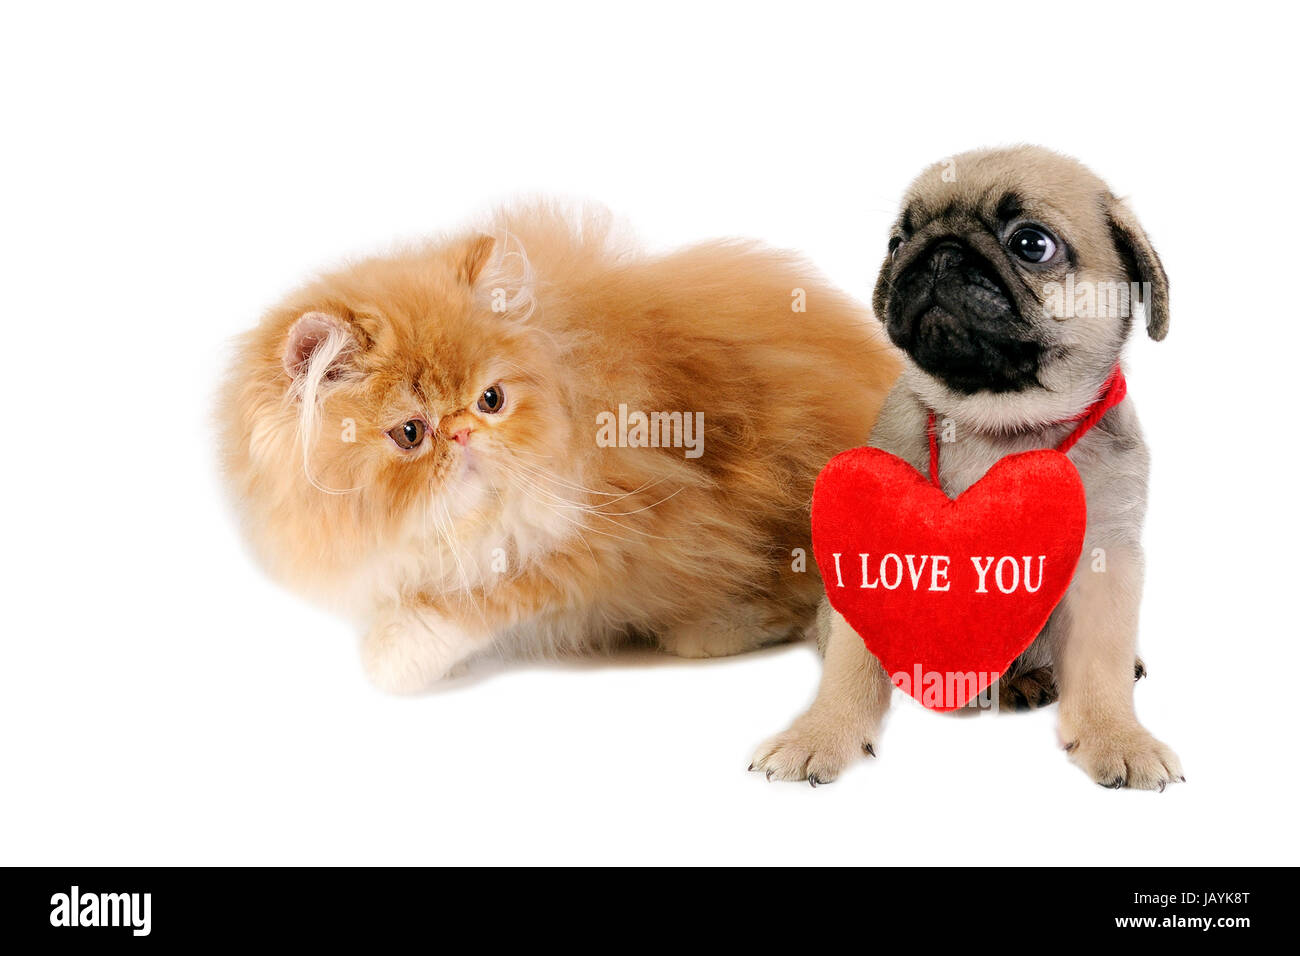 Niedlichen Mops Welpen mit "I Love You" und süße Perser Kätzchen Sign  Stockfotografie - Alamy